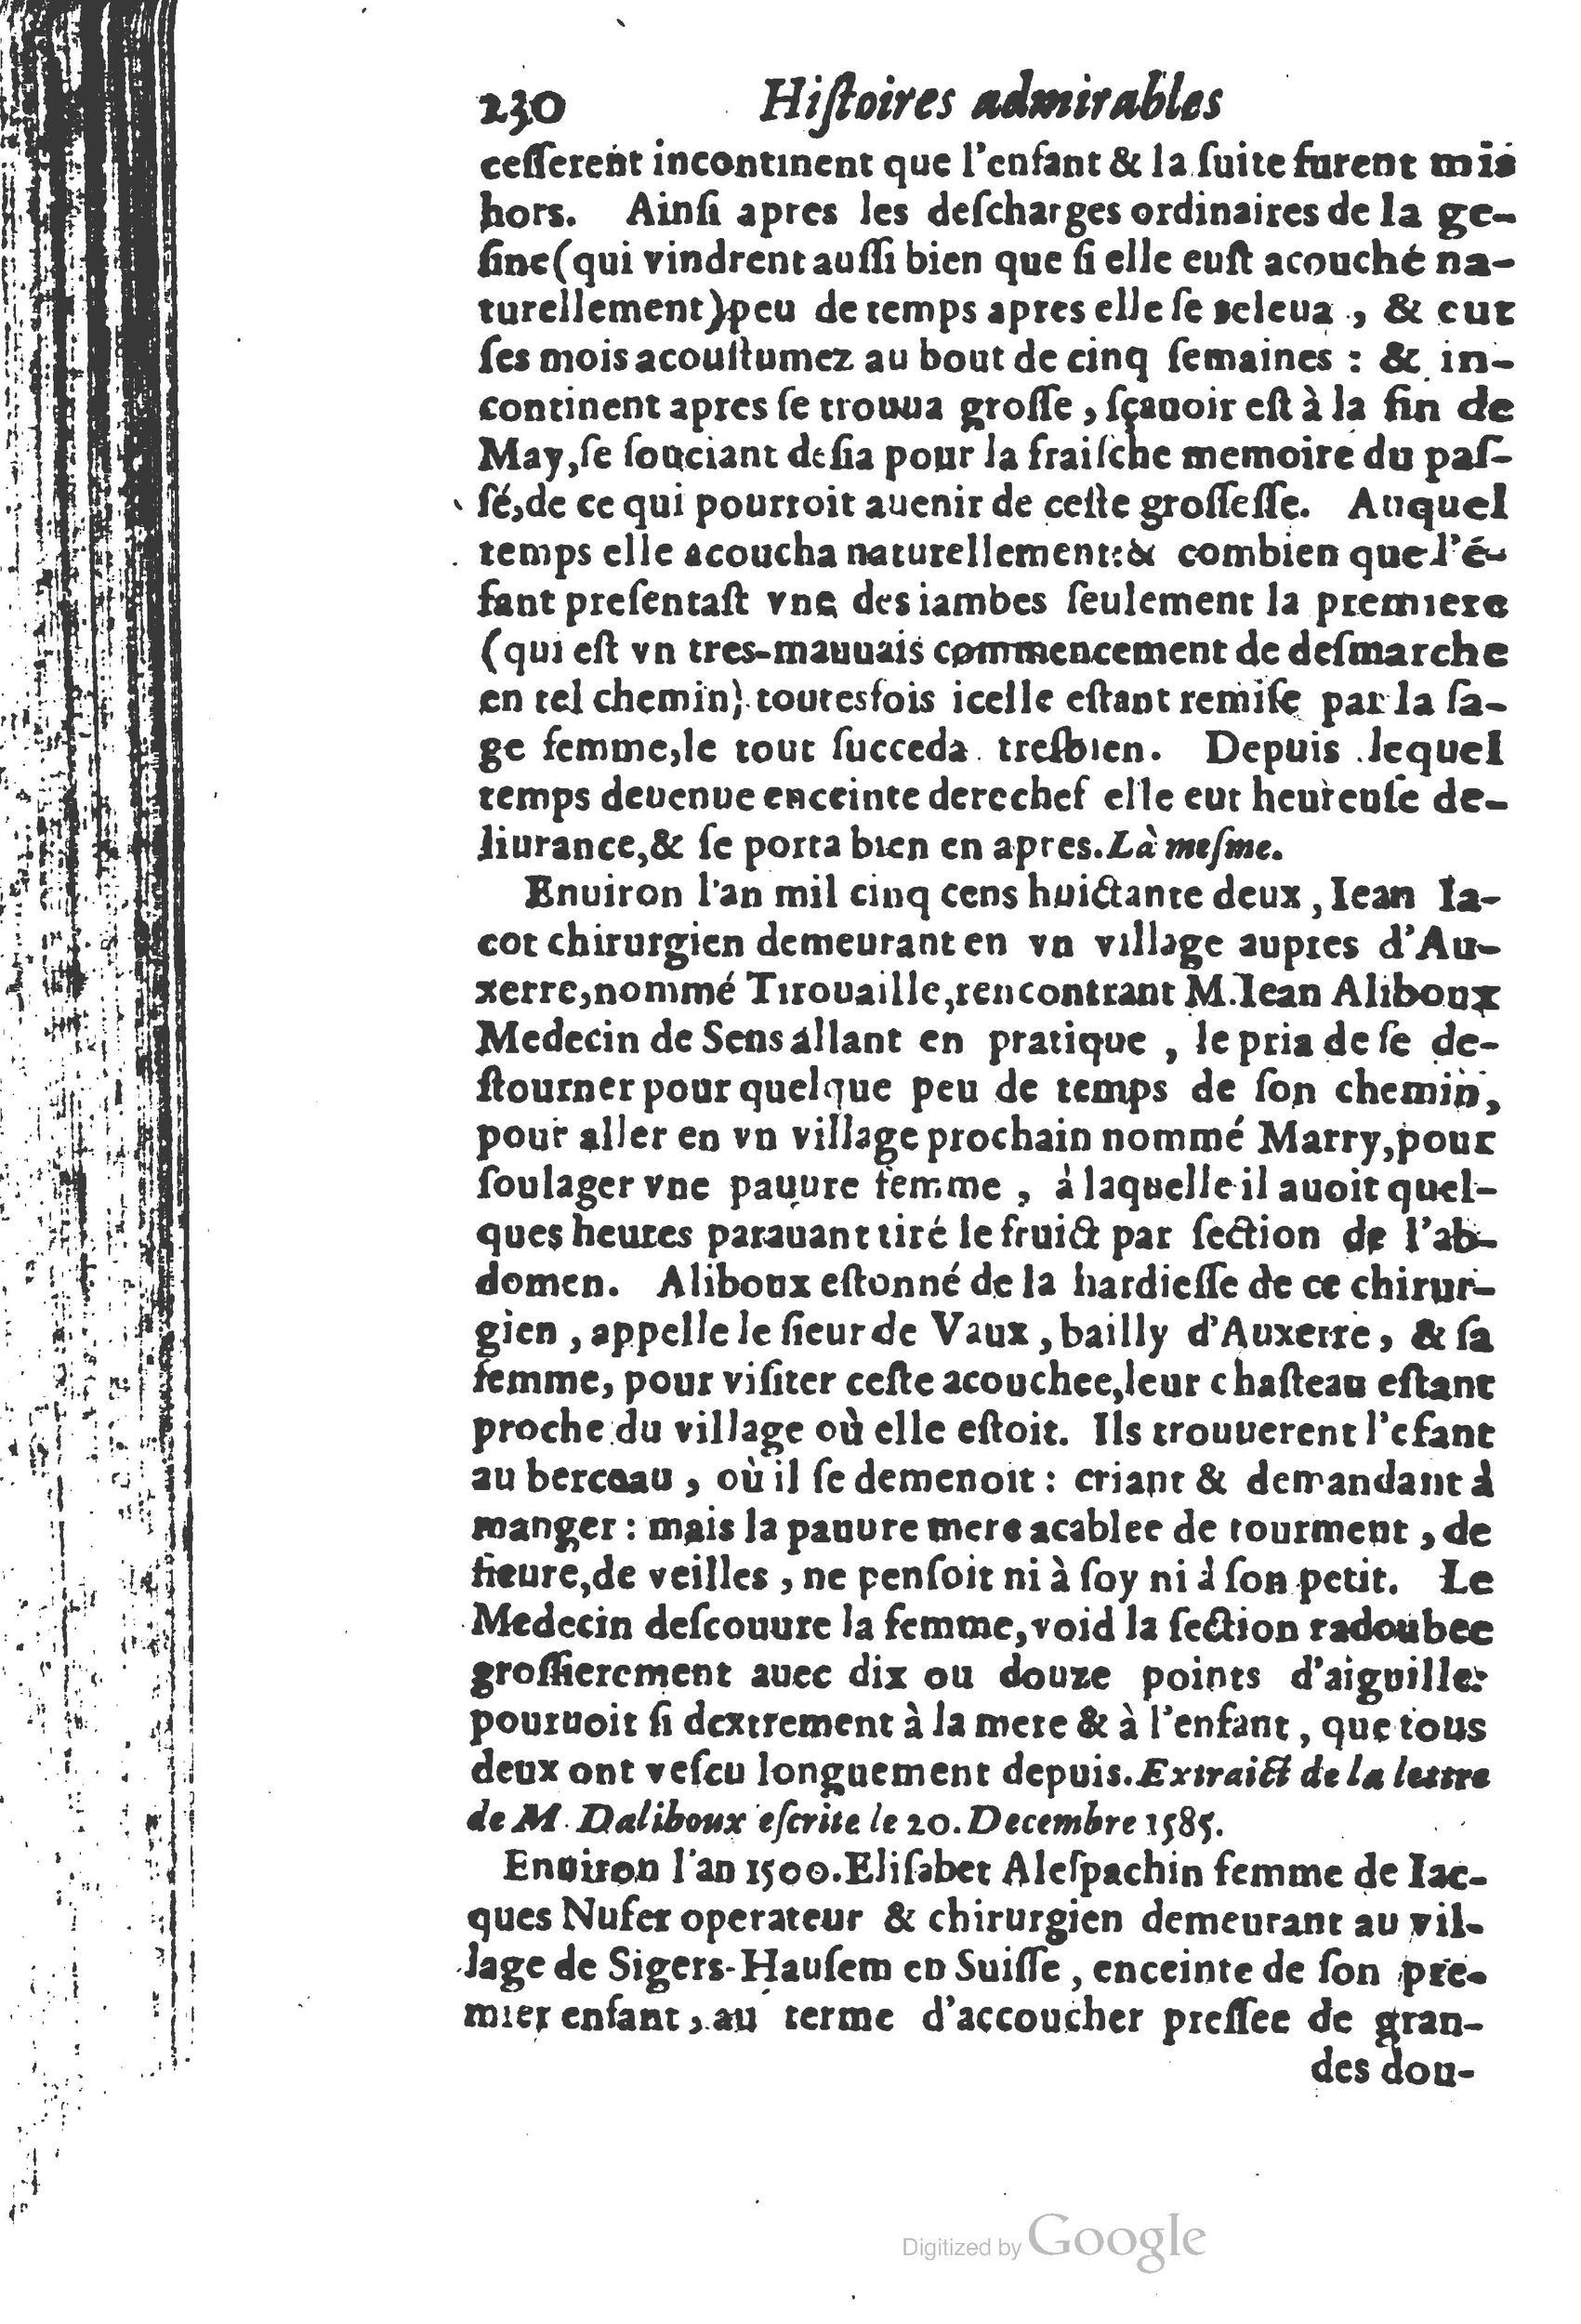 1610 Trésor d’histoires admirables et mémorables de nostre temps Marceau Princeton_Page_0251.jpg